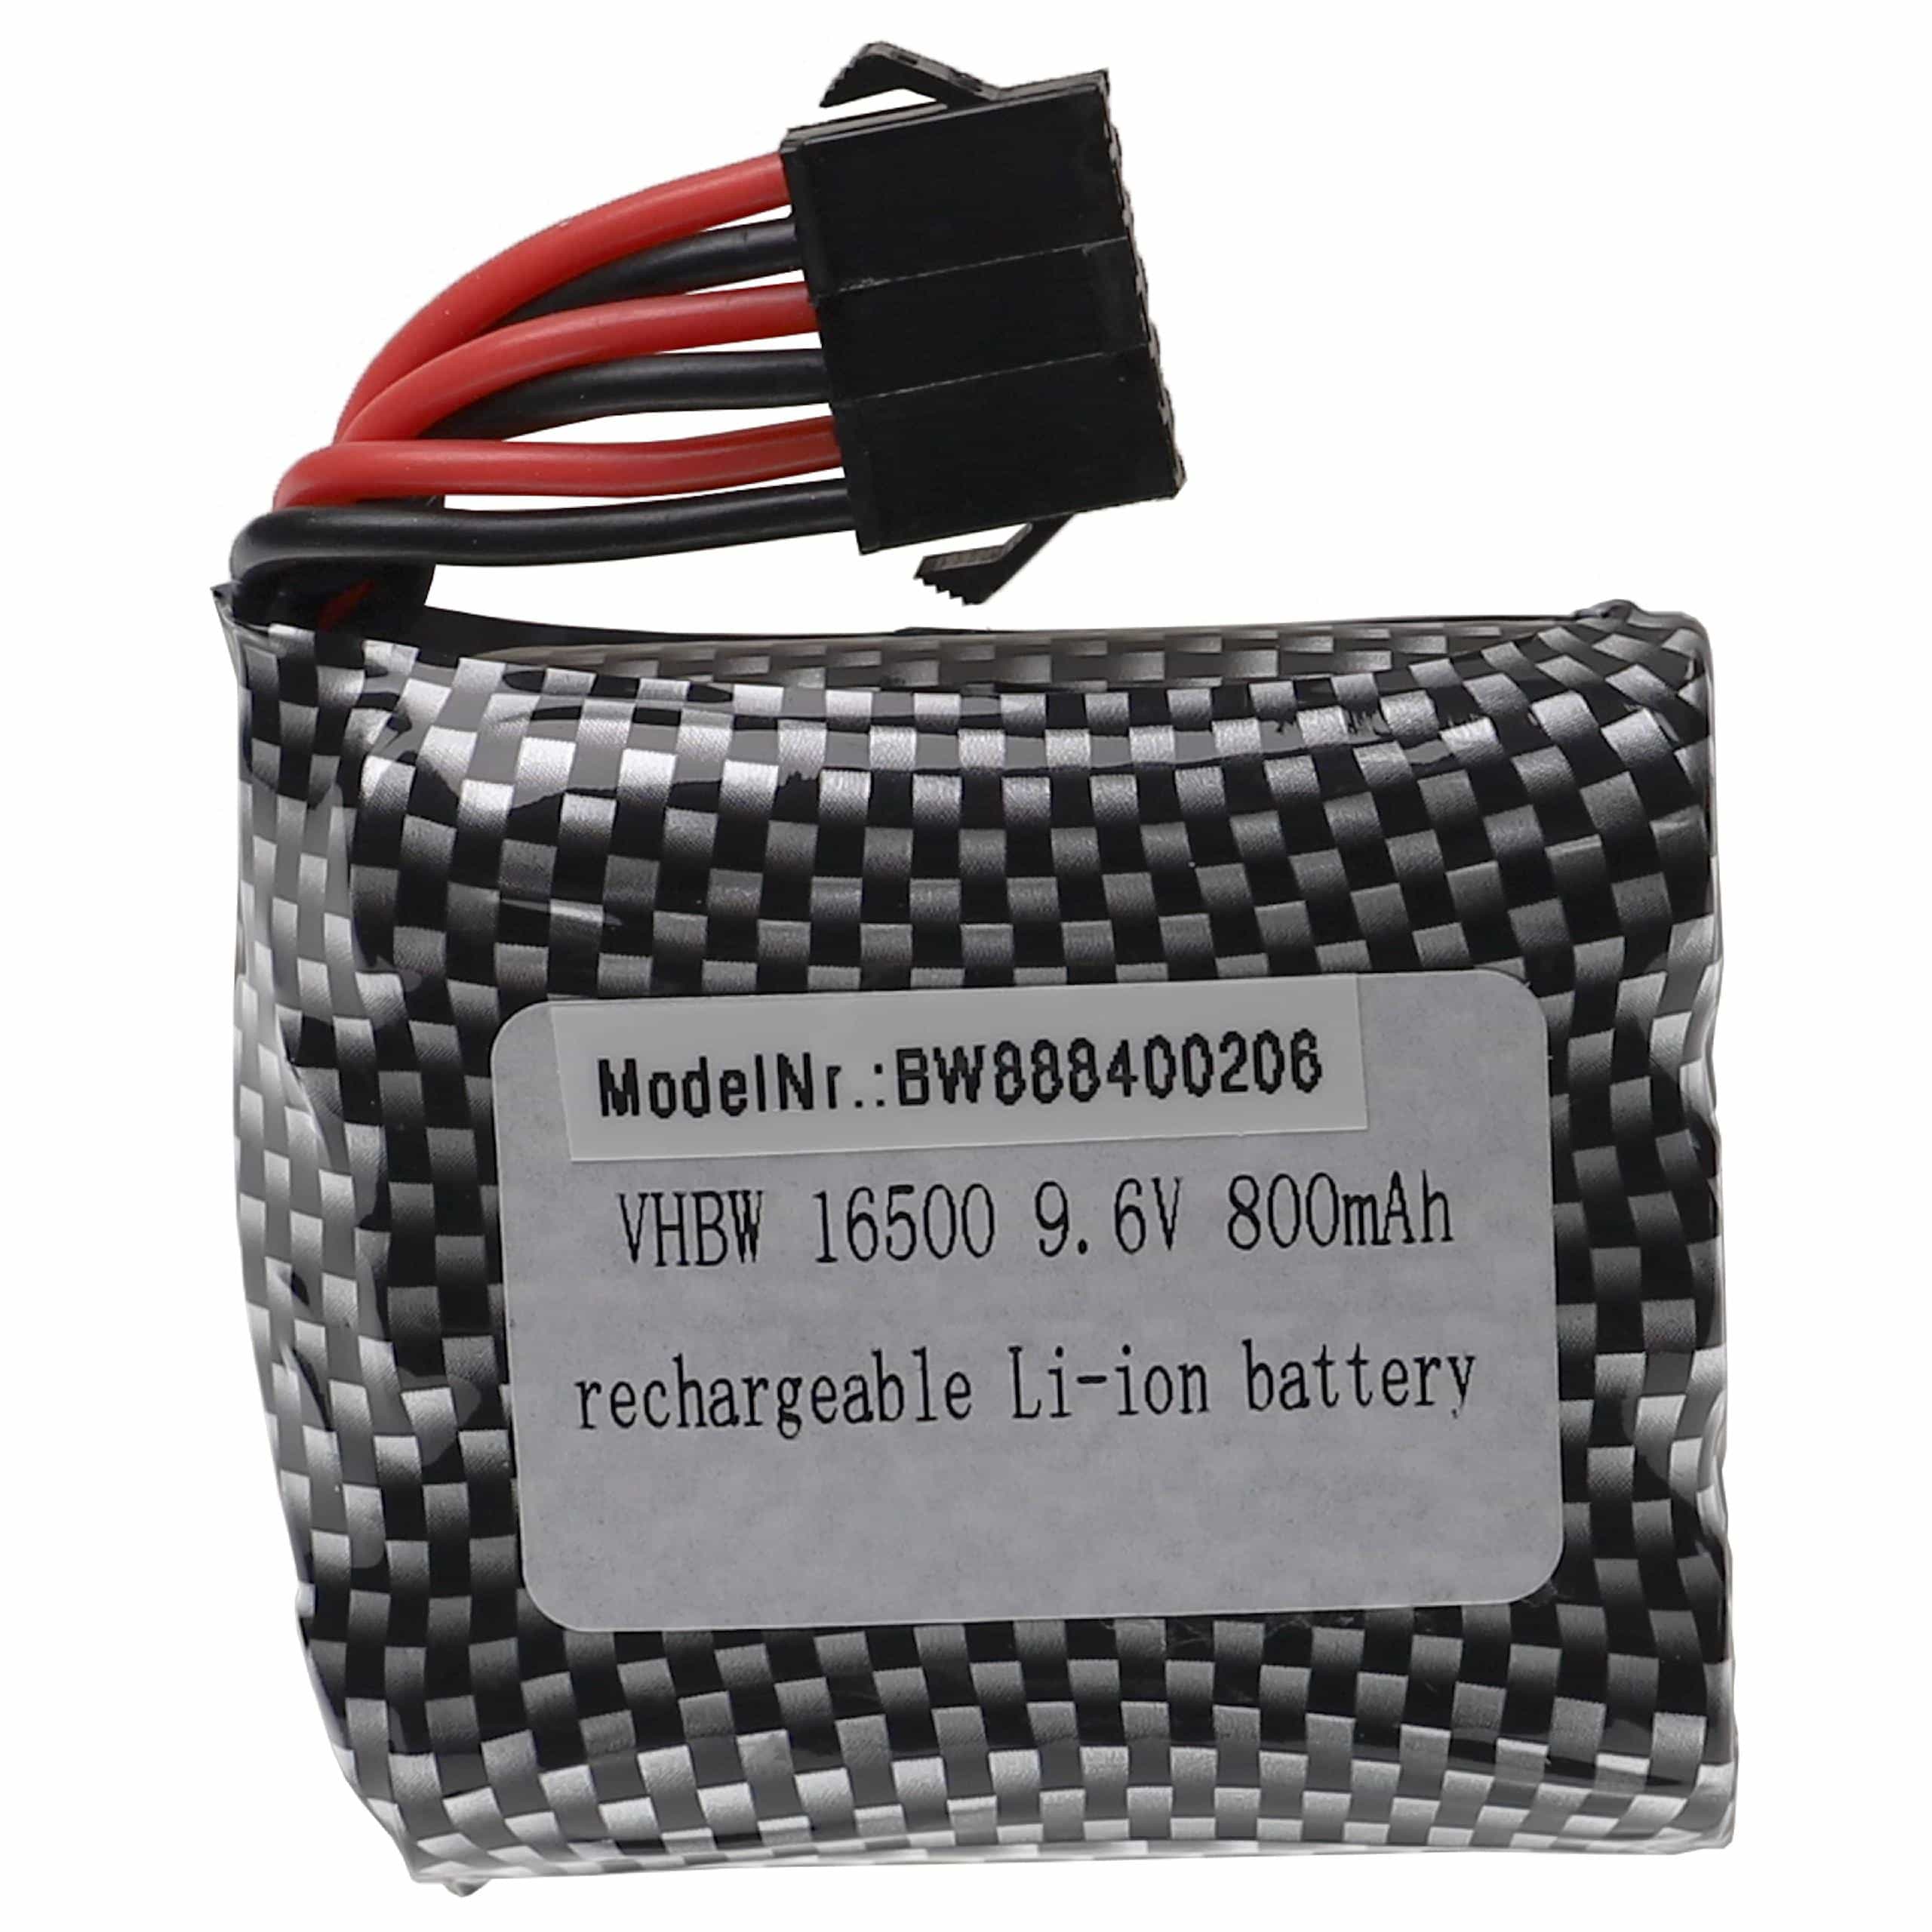 Batterie remplace GPToys pour modèle radio-télécommandé - 800mAh 9,6V Li-ion, SM-6P